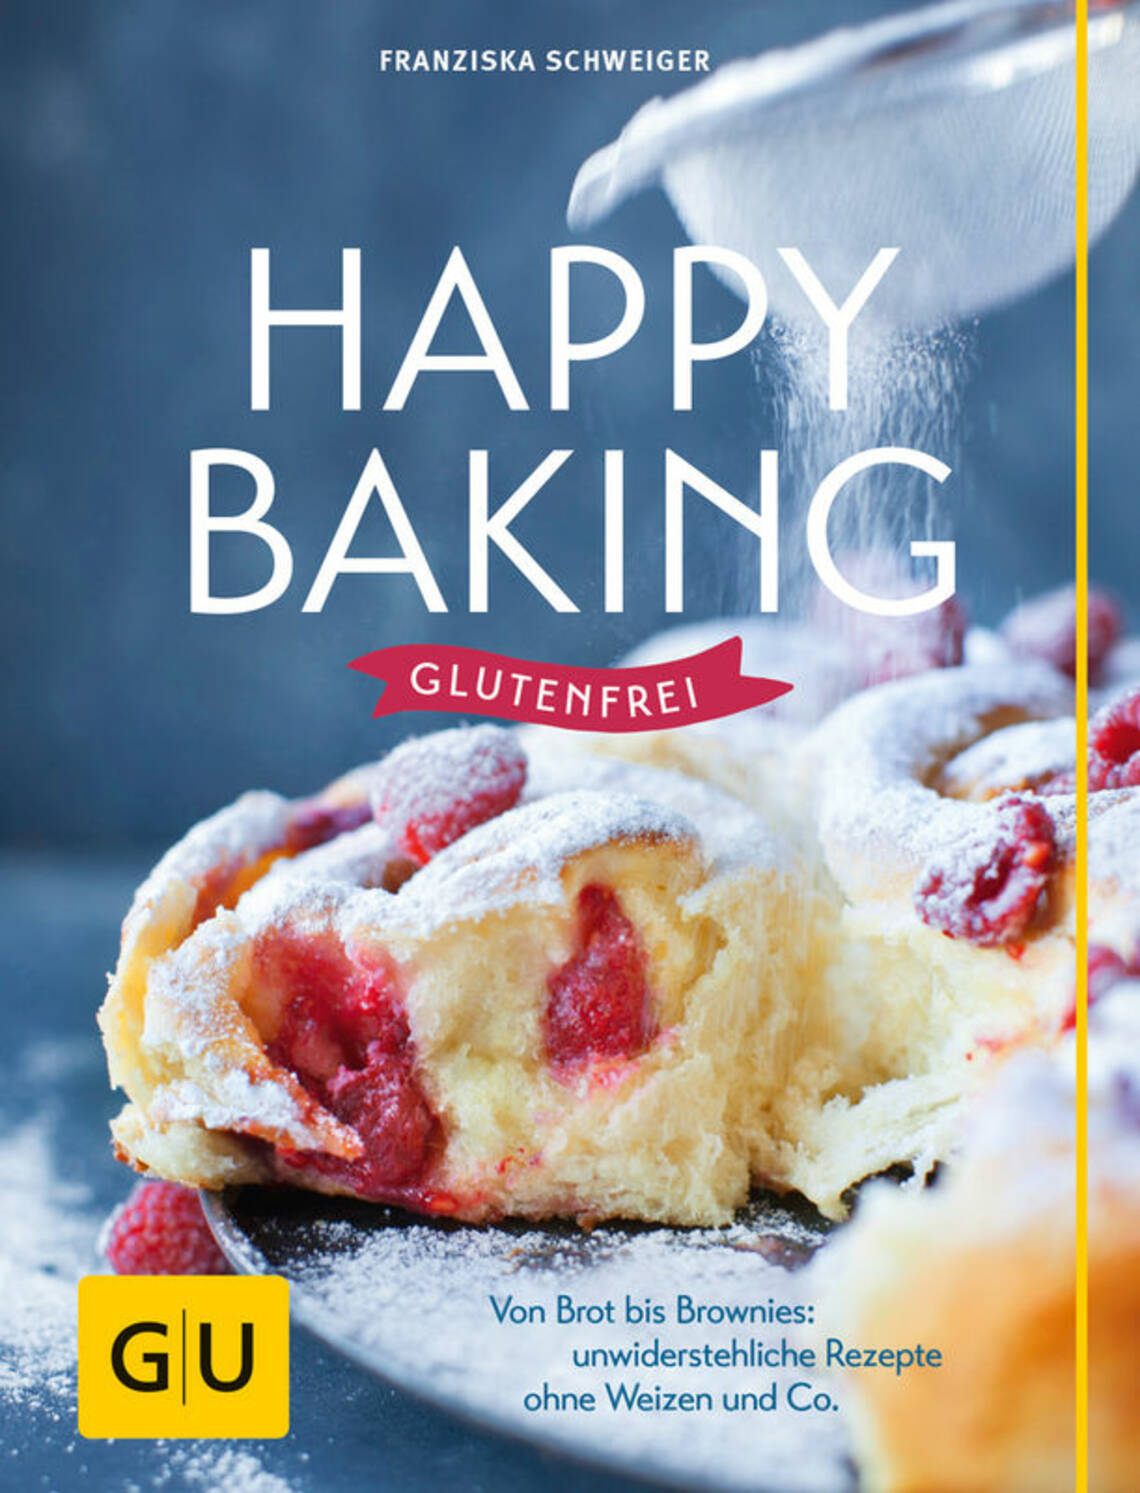 Happy baking glutenfrei von Franziska Schweiger